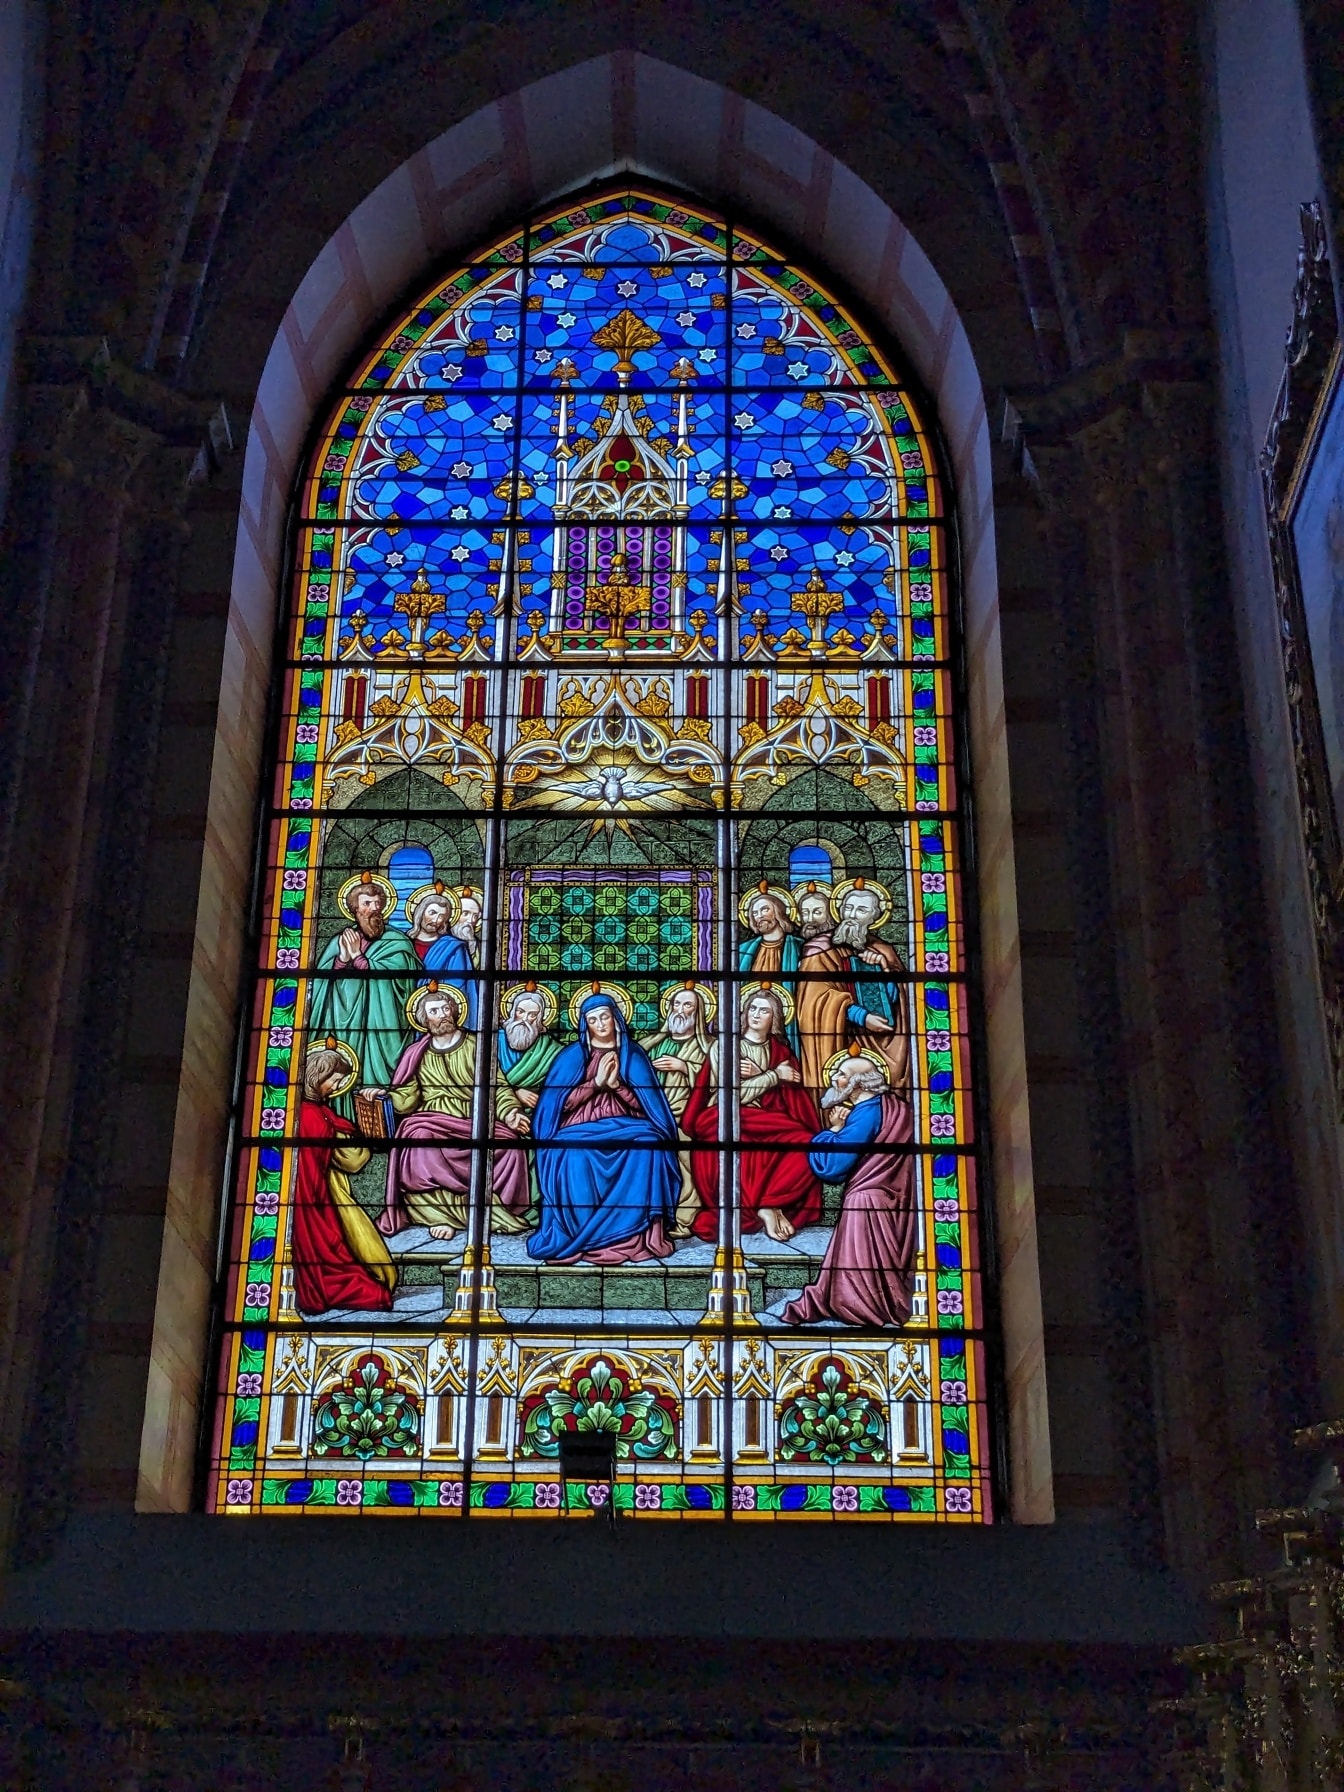 Magnifique vitrail de style néo-gothique dans une église catholique romaine